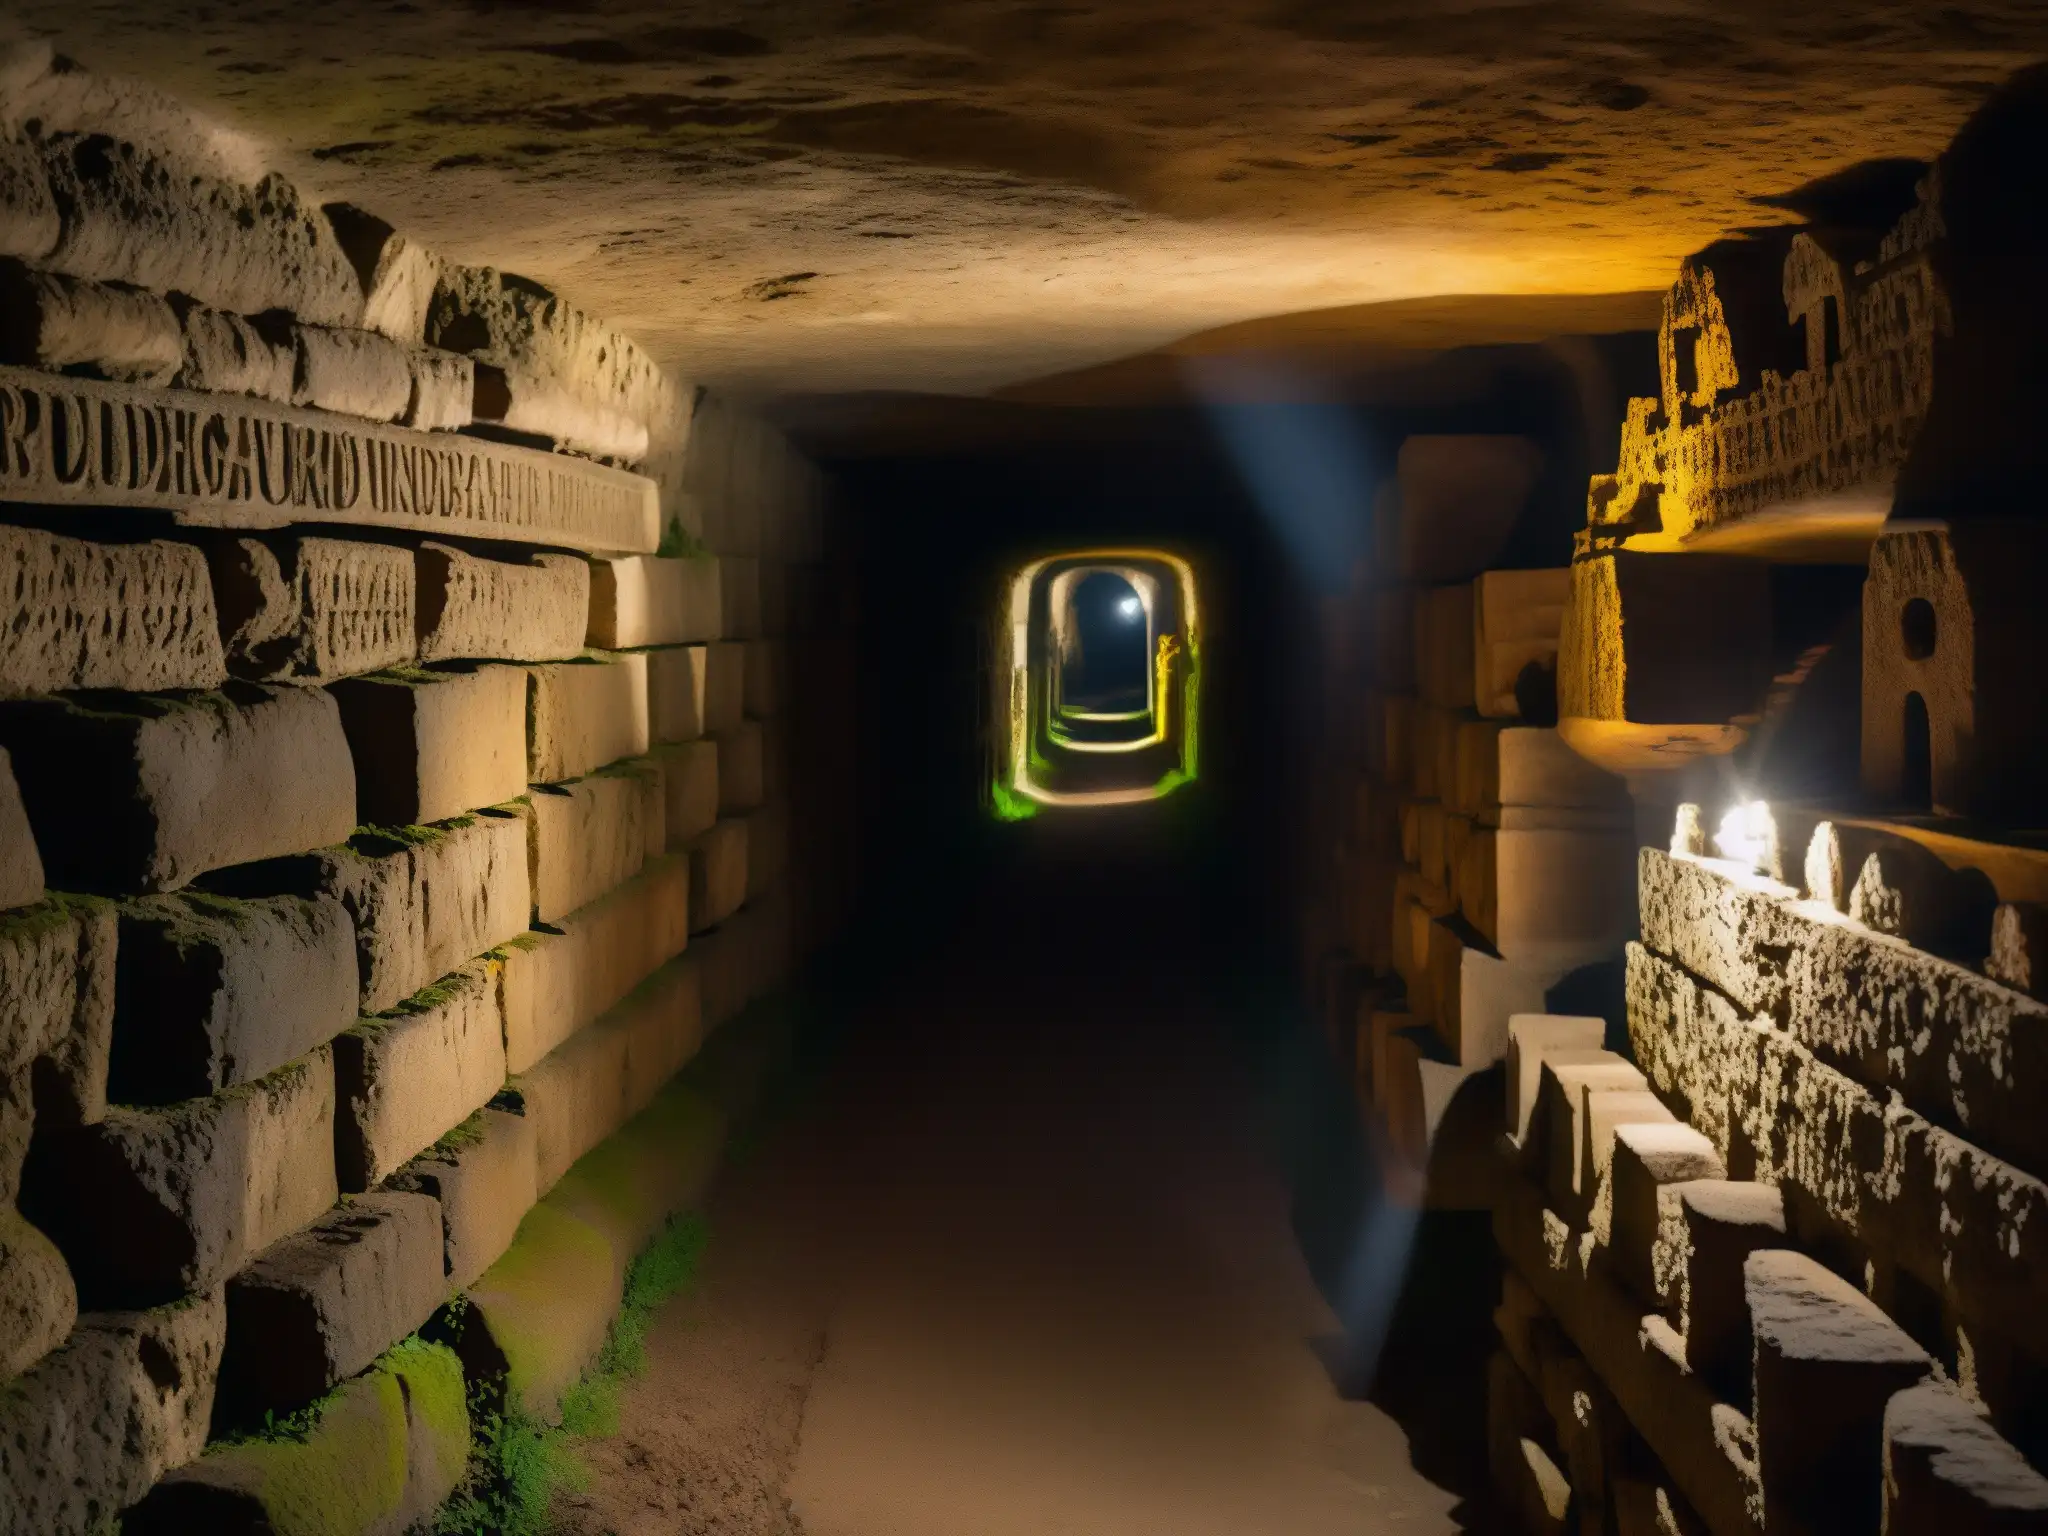 Un pasaje subterráneo en las catacumbas romanas, con muros de piedra cubiertos de grabados, sombras y luz de antorchas